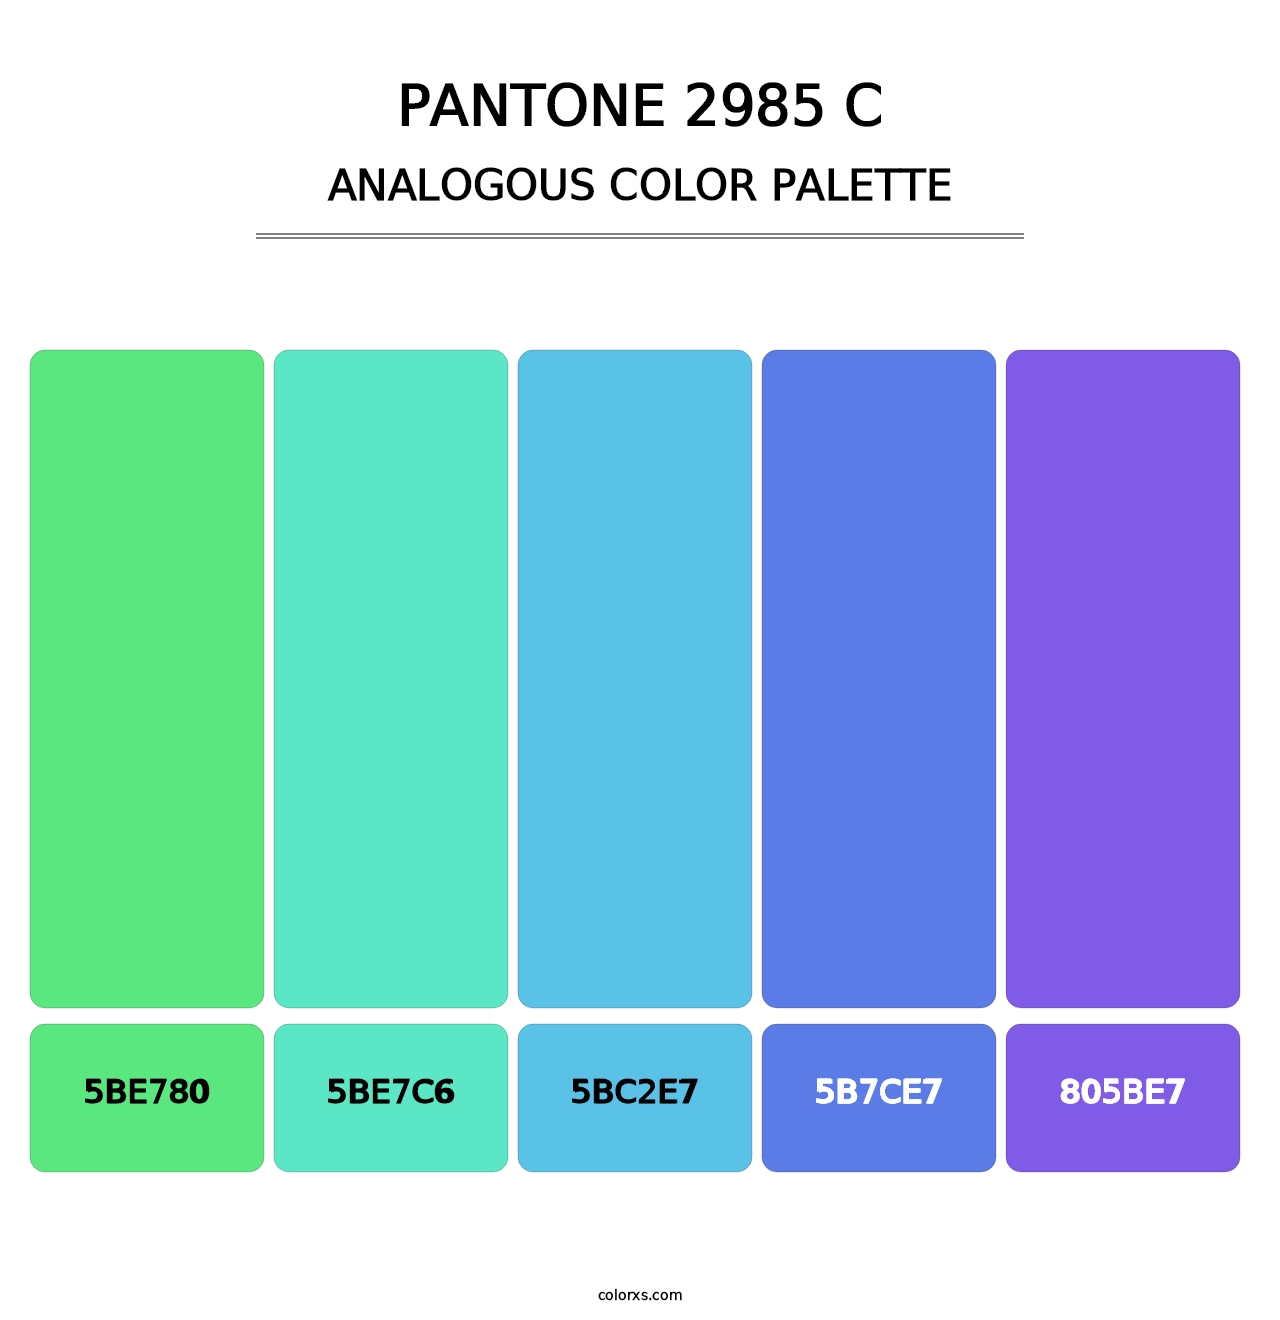 PANTONE 2985 C - Analogous Color Palette